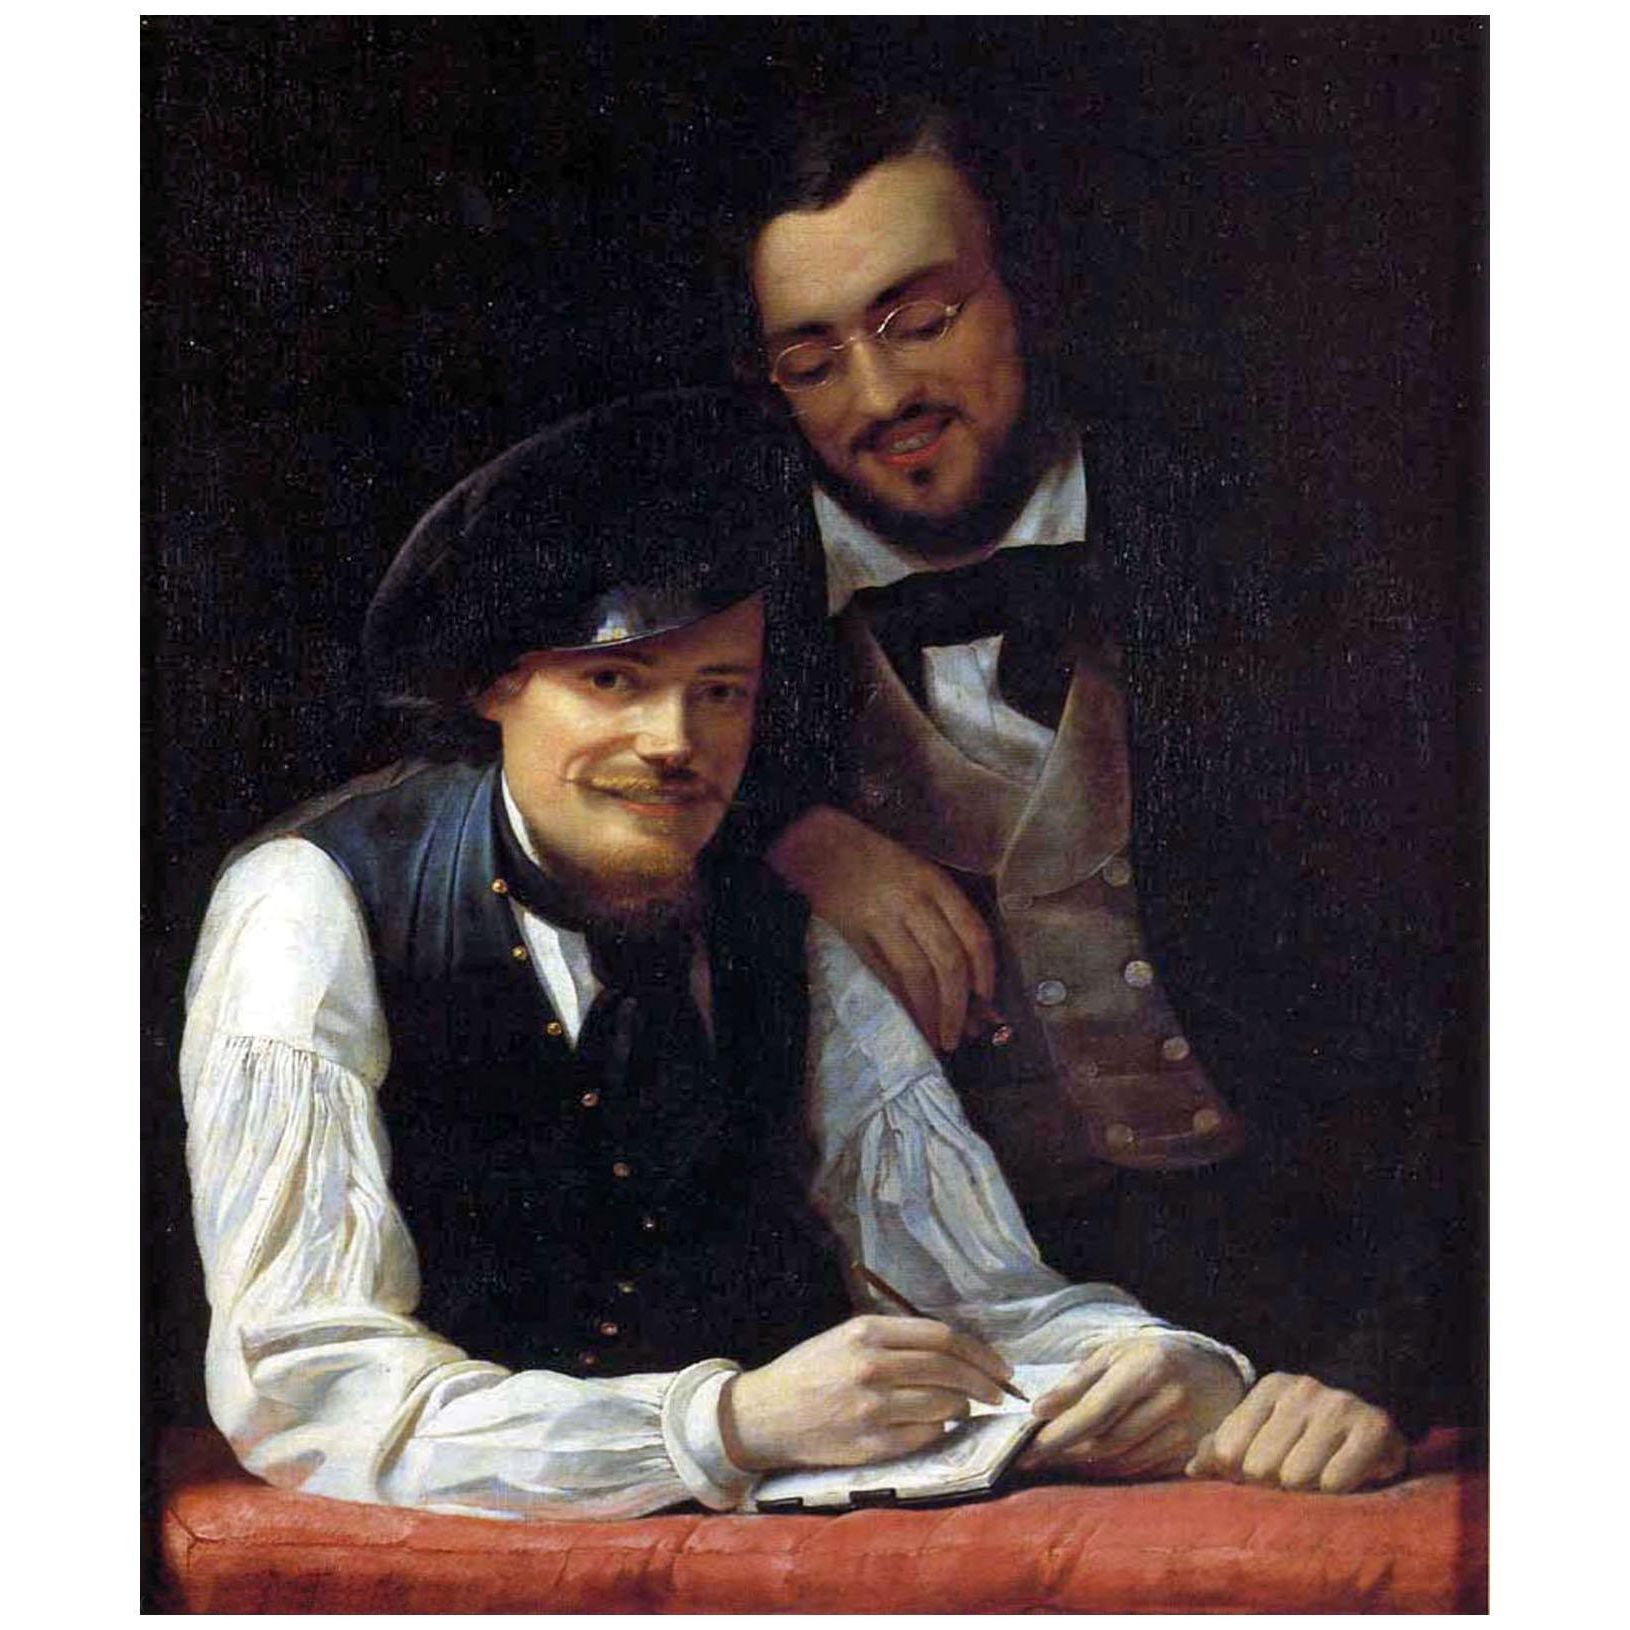 Franz Winterhalter. Selbstporträt mit Bruder. 1840. Kunsthalle Karlsruhe